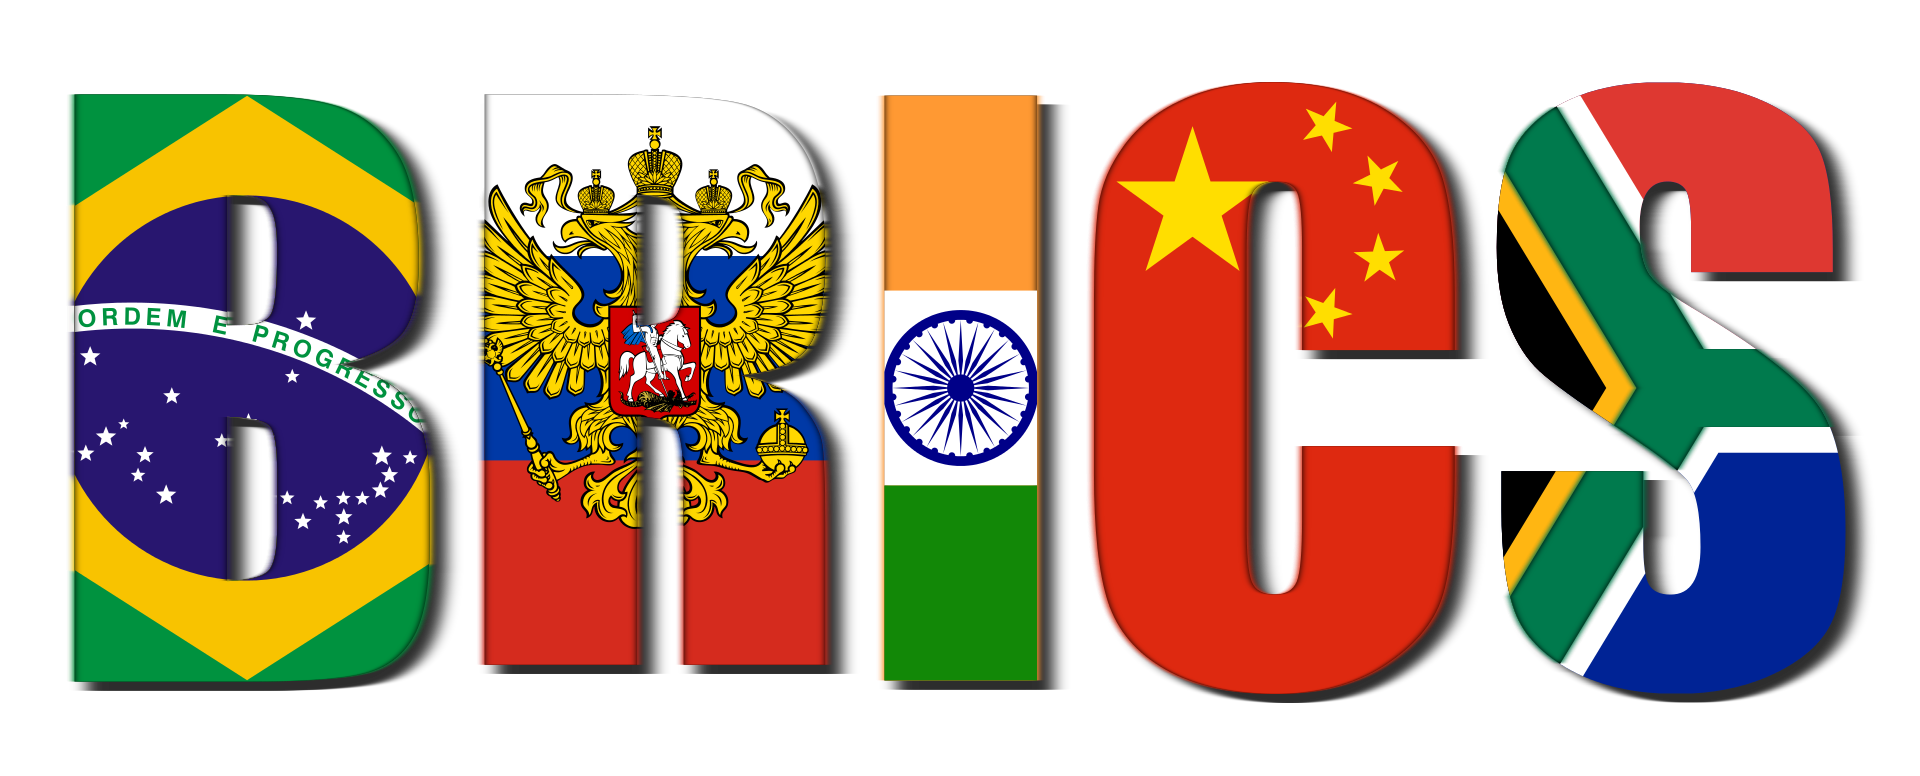 22 / 24  Ağustos  BRICS  toplantısı   kapsamında kurucu  üyelerin  yanında ( Arjantin, Mısır, İran, Etiyopya, Suudi Arabistan, BAE. Nin de ) üye  olmaları  konusunda  görüş  birliği sağlanıyor… - Brics logo